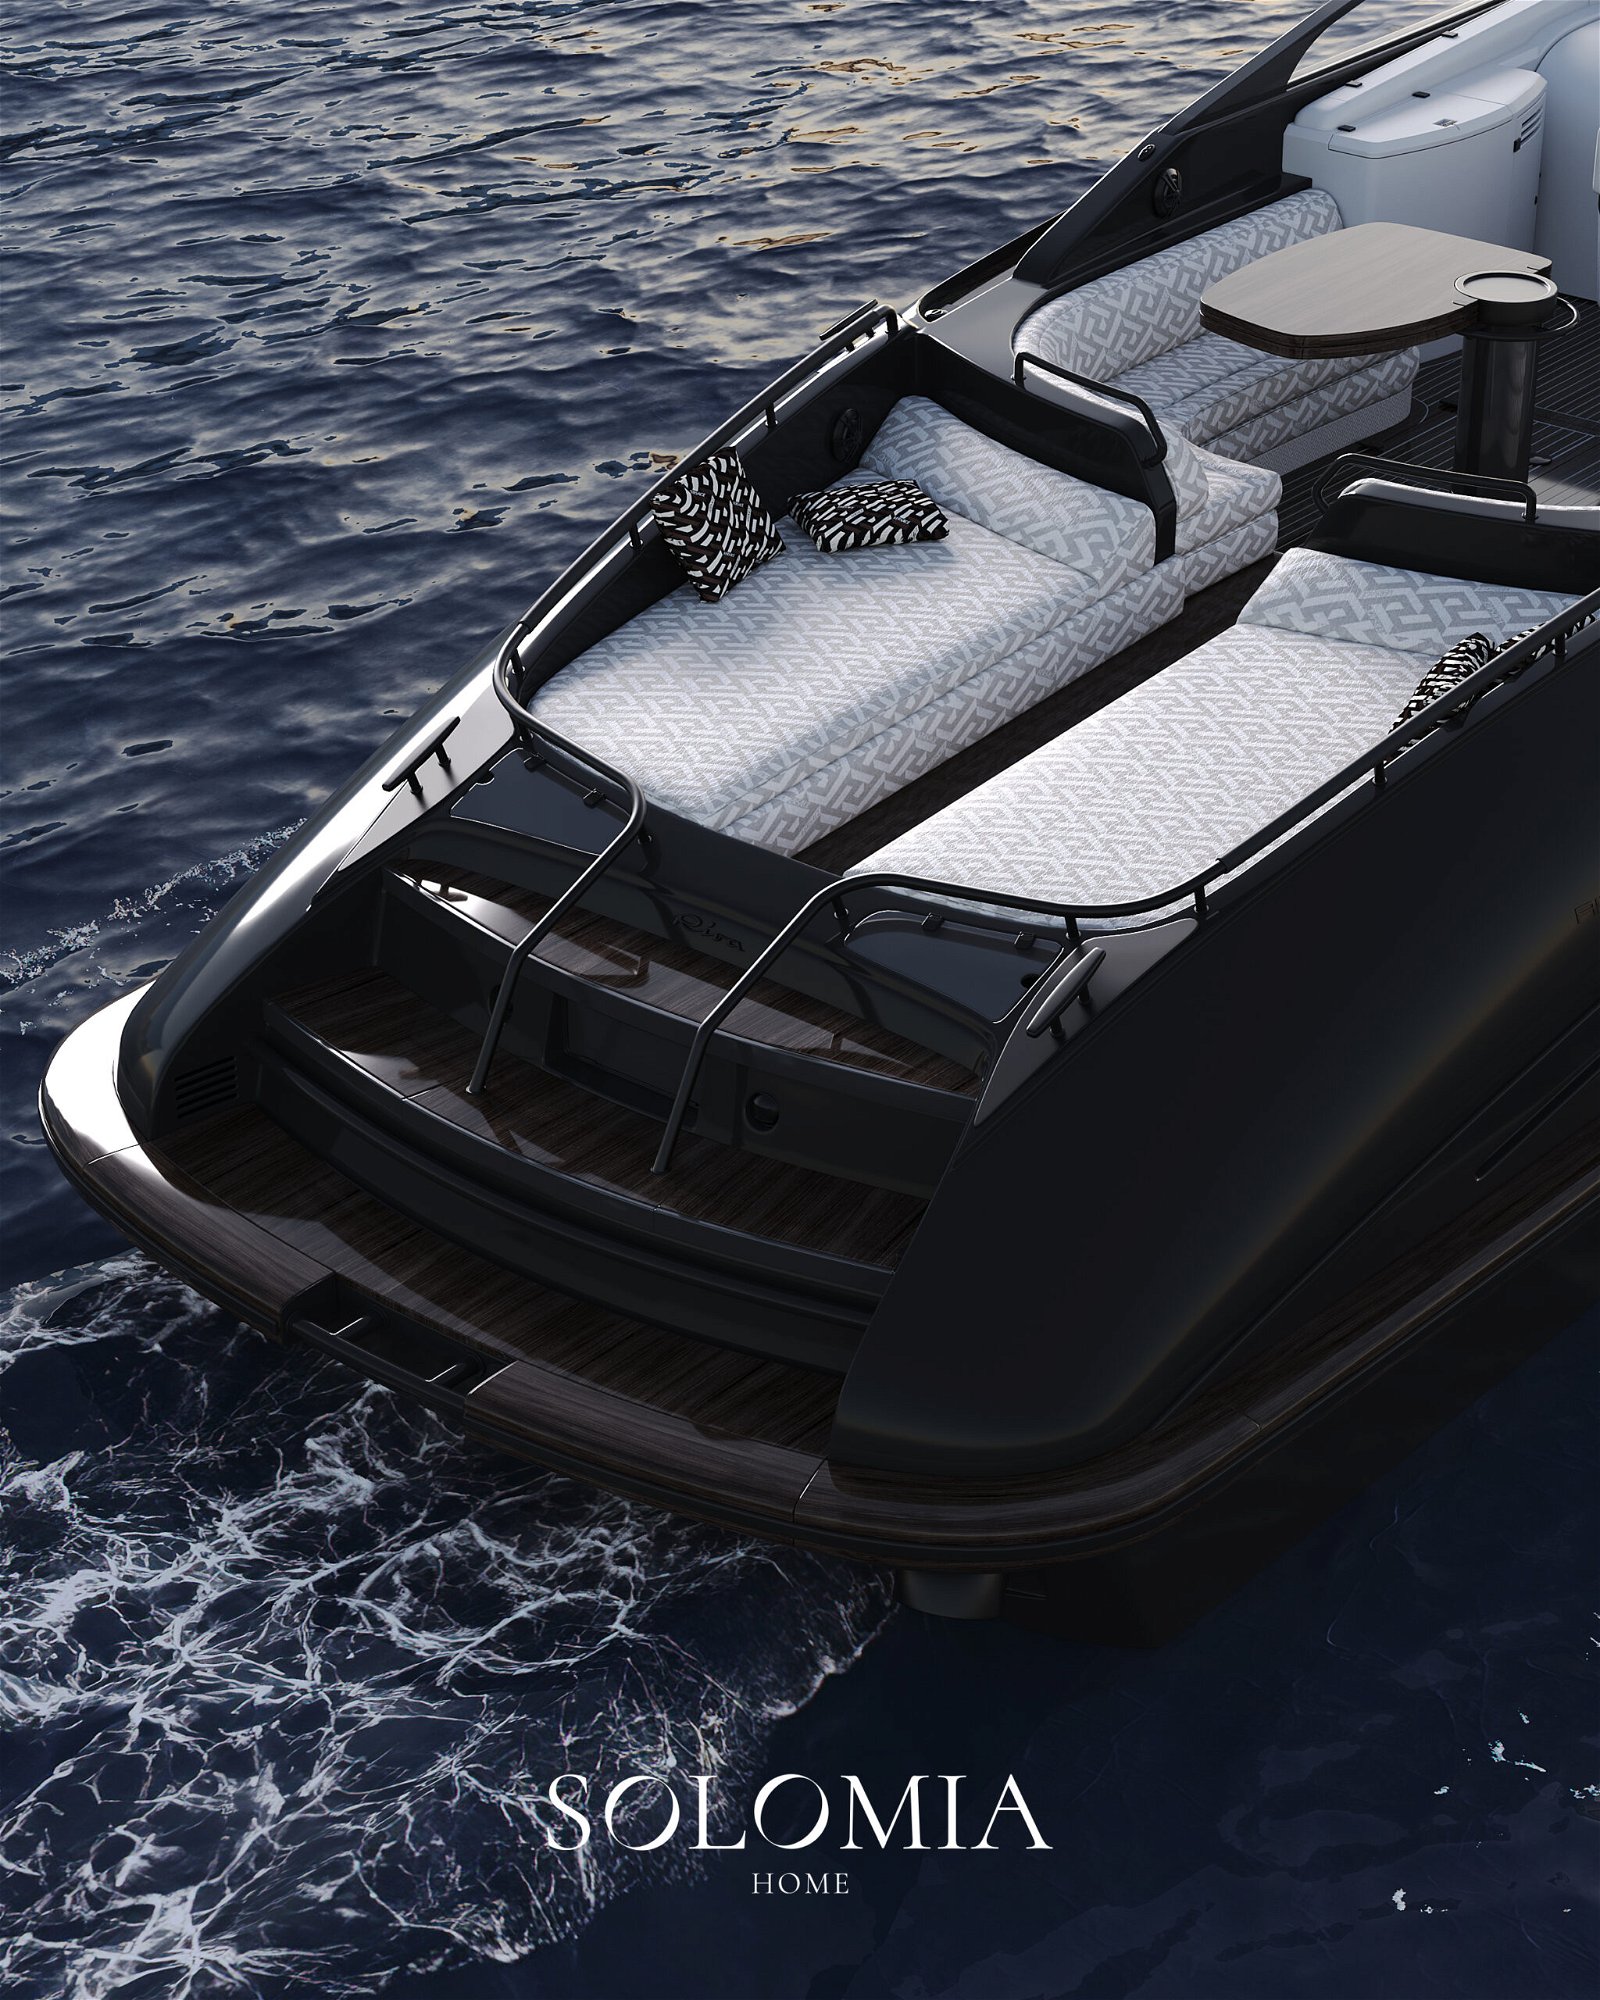 Yacht Riva Solomia Home design